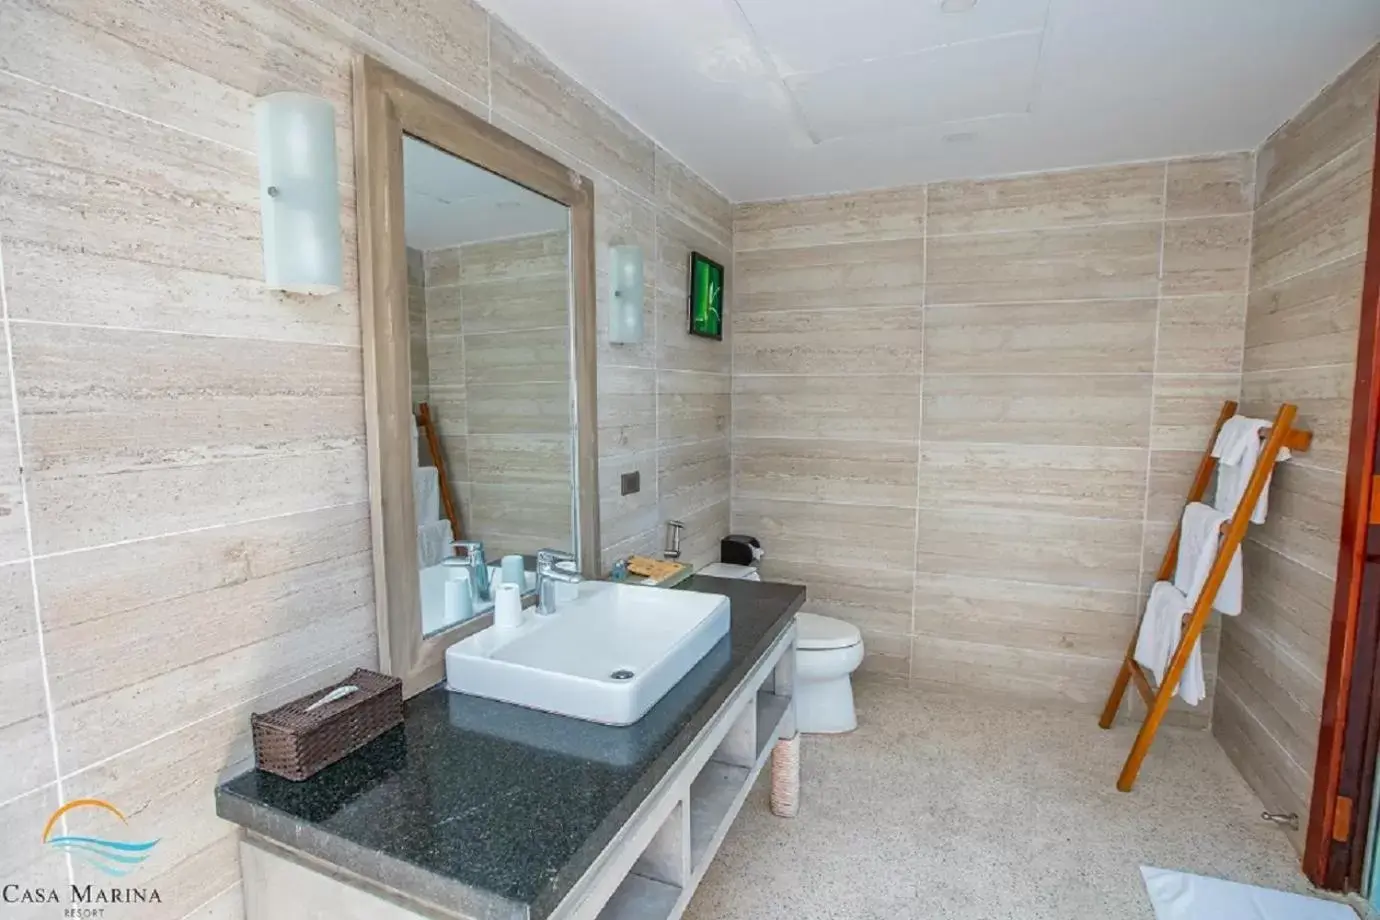 Shower, Bathroom in Casa Marina Resort